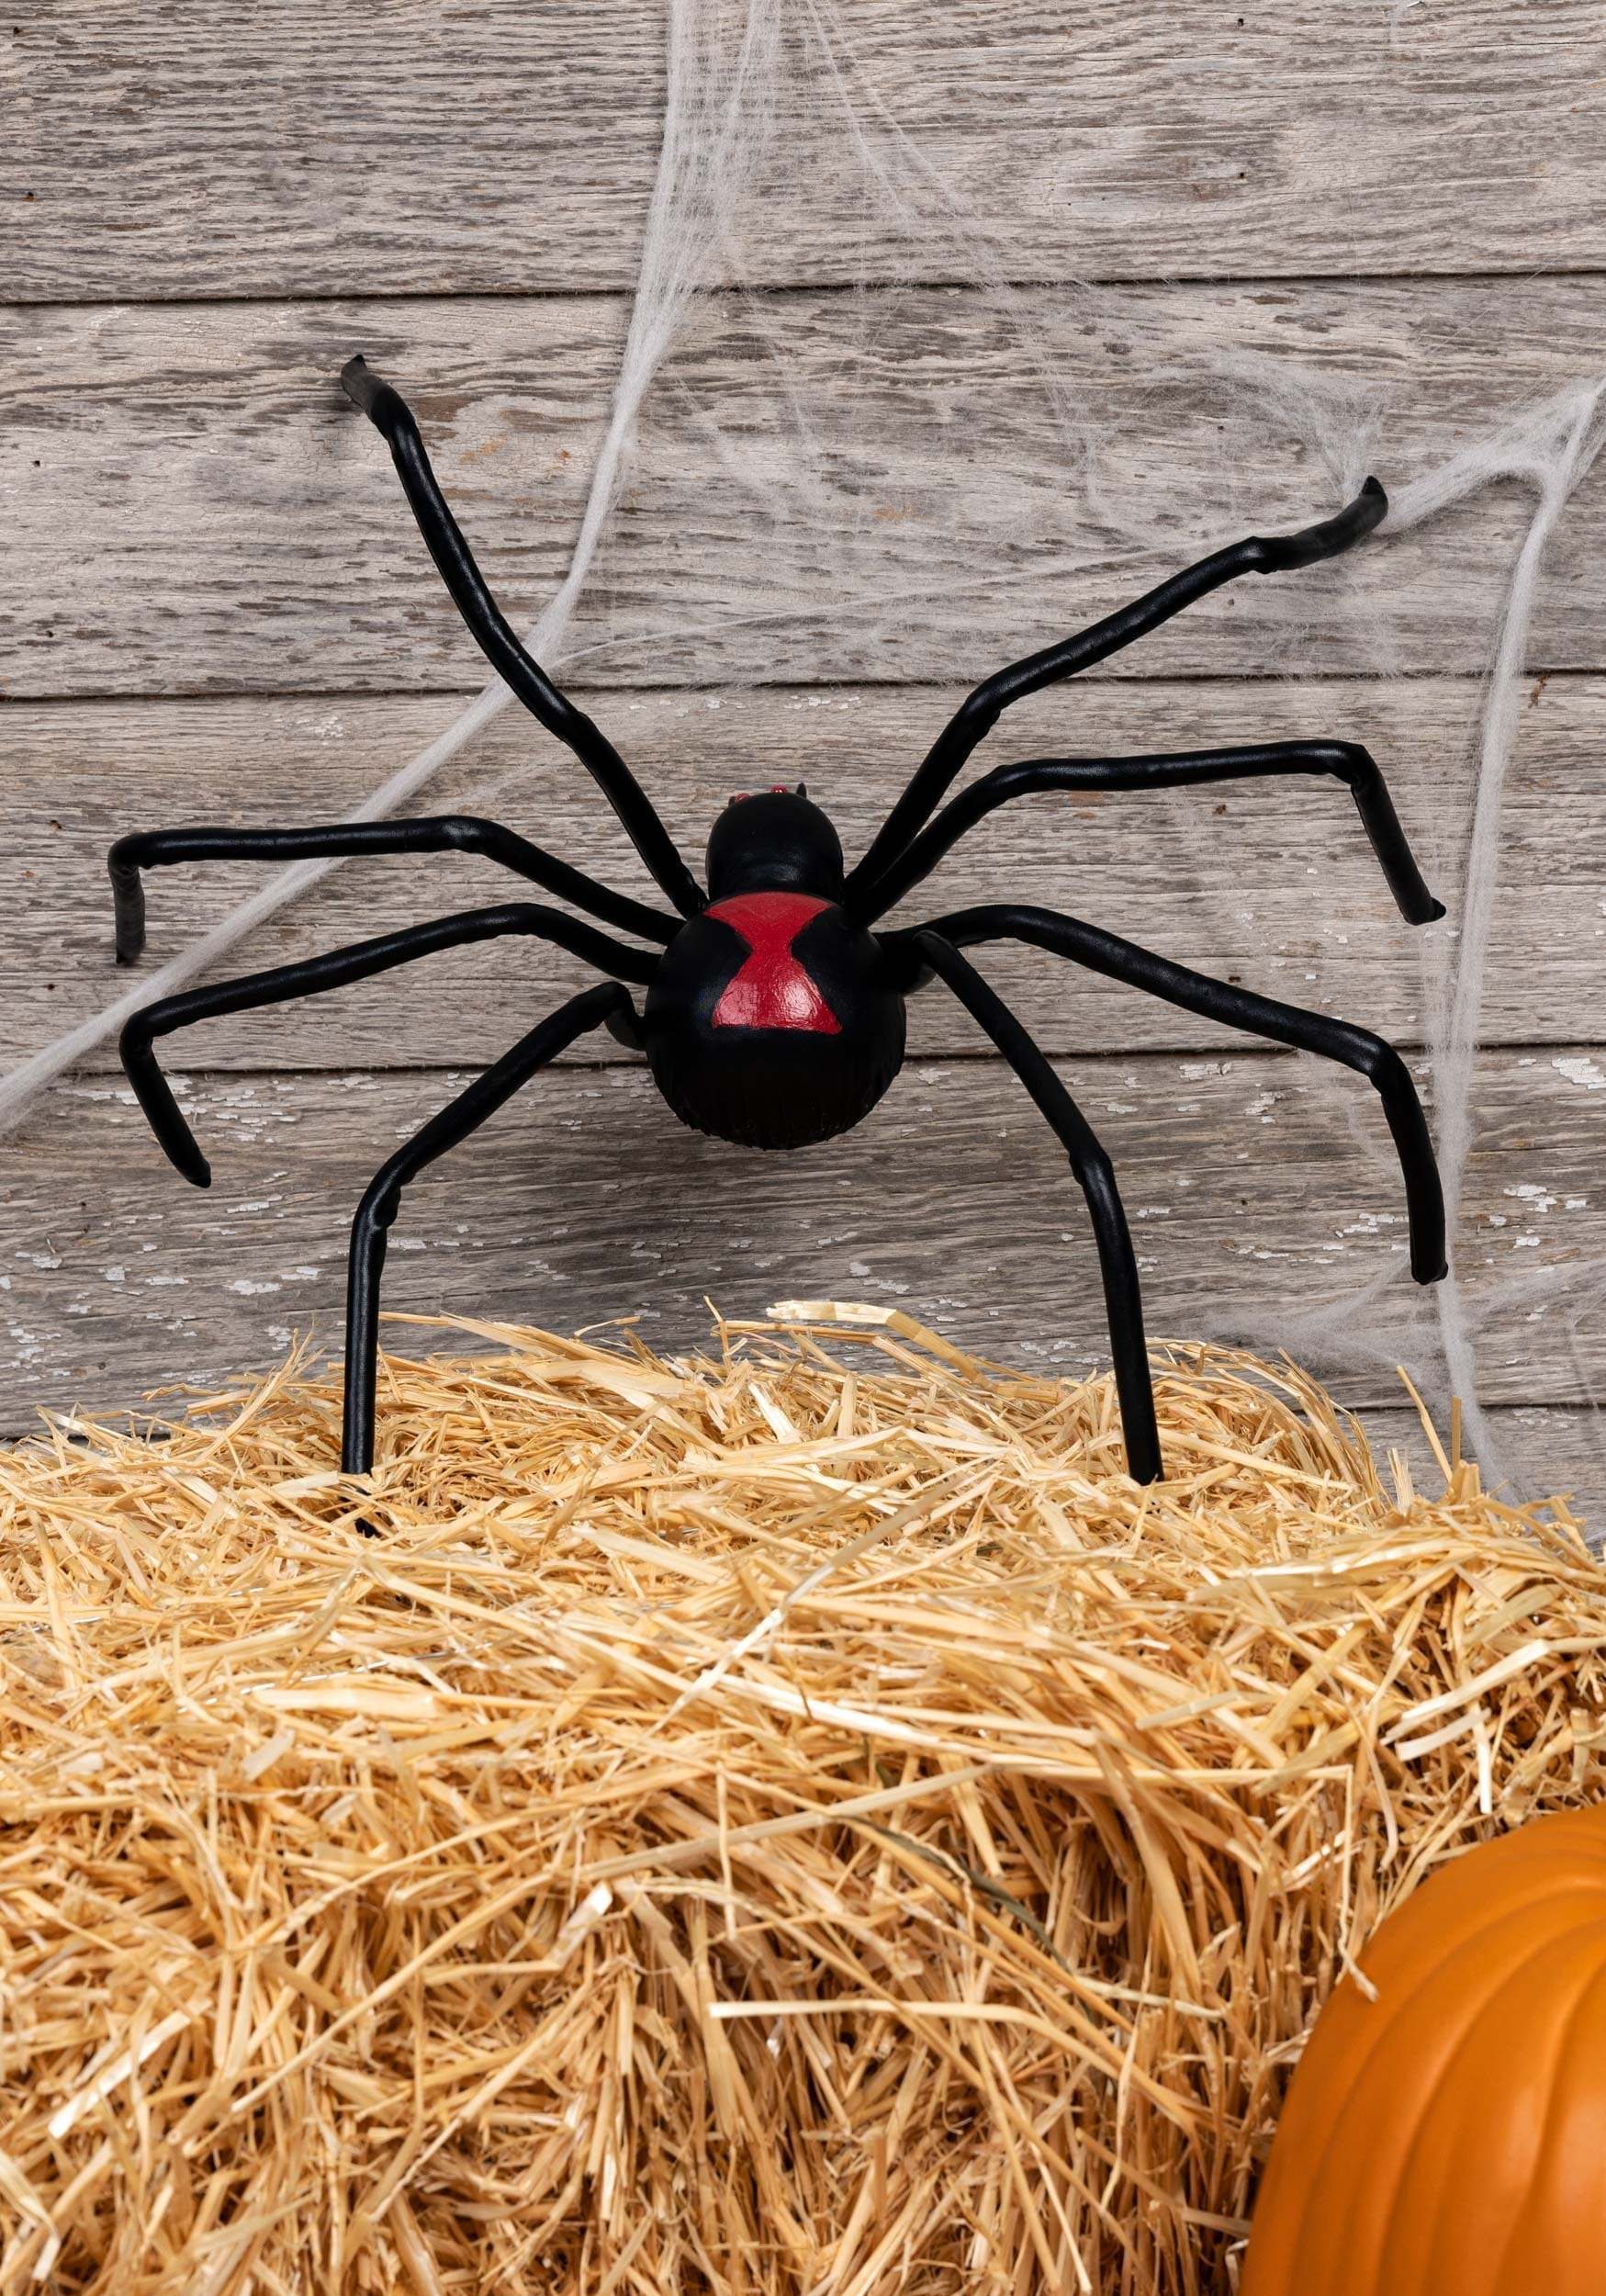 Black Widow Spider Halloween Prop | Spider Decorations